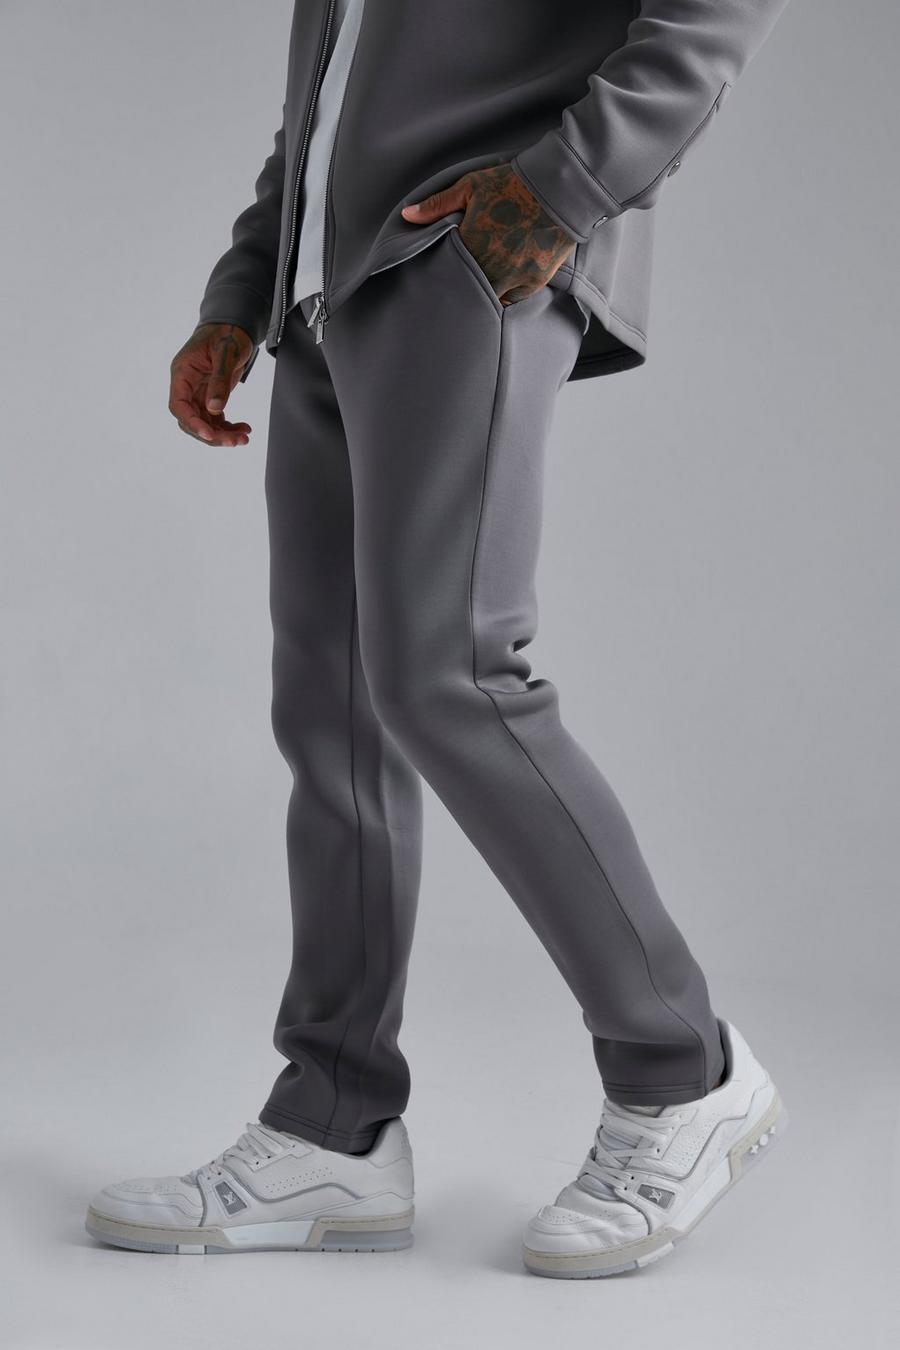 Pantaloni sartoriali Smart Skinny Fit in neoprene, Grey grigio